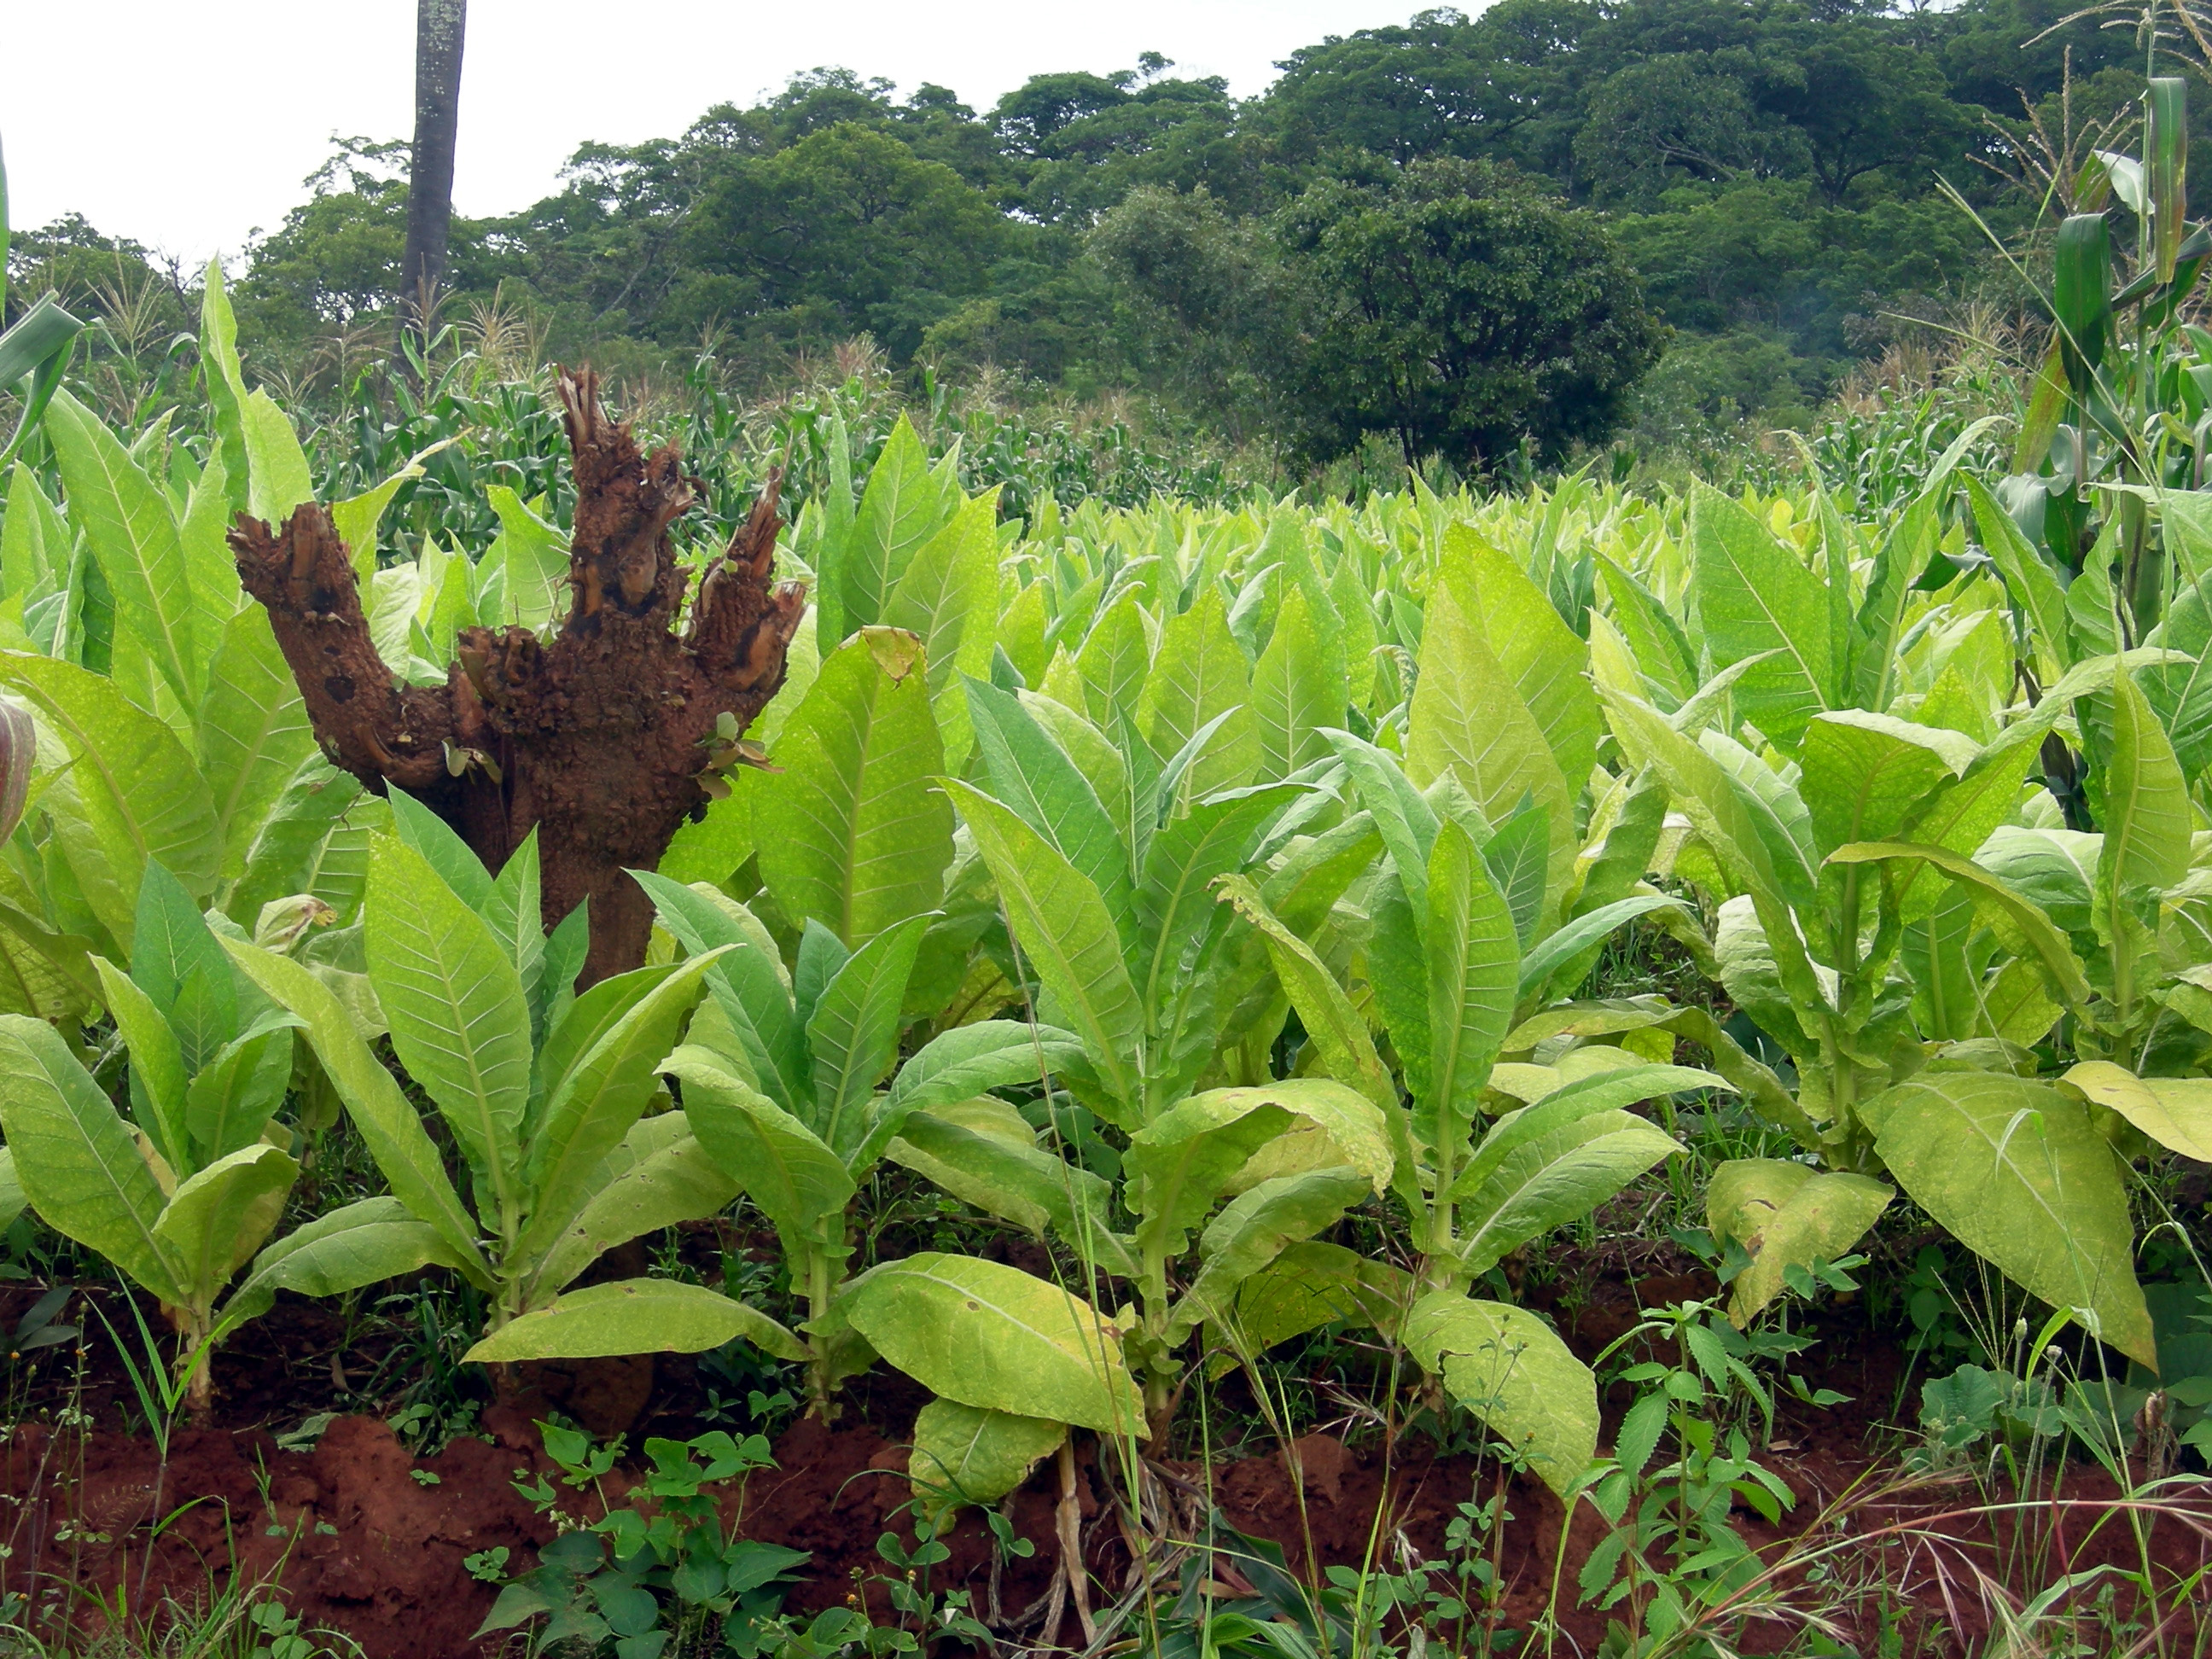 Tobacco plantation in Malawi